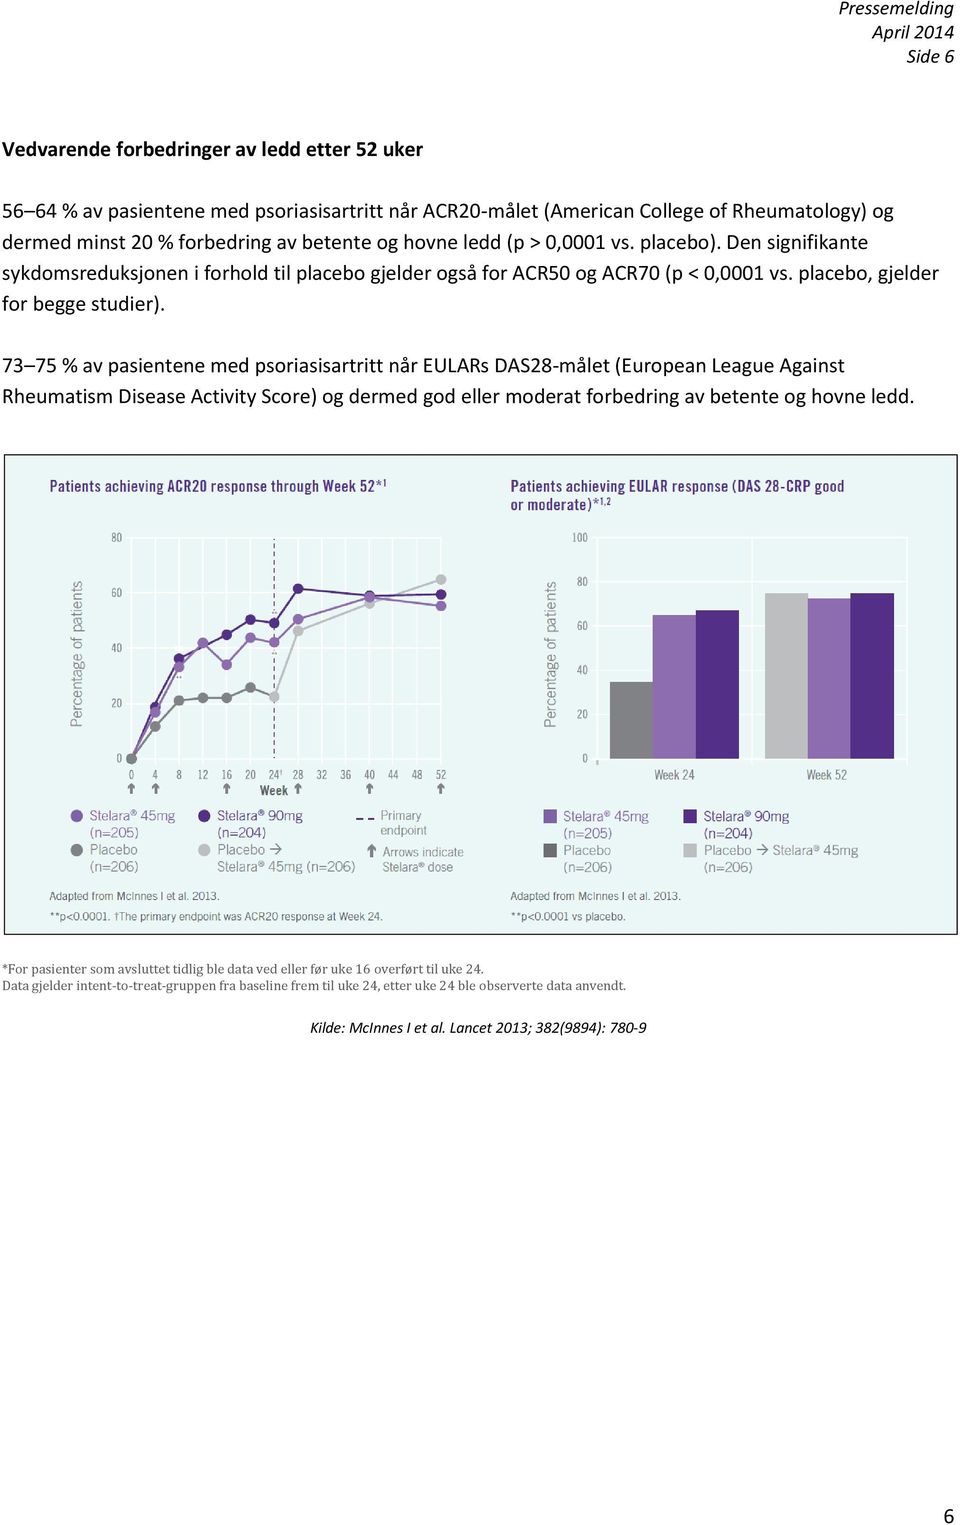 73 75 % av pasientene med psoriasisartritt når EULARs DAS28-målet (European League Against Rheumatism Disease Activity Score) og dermed god eller moderat forbedring av betente og hovne ledd.